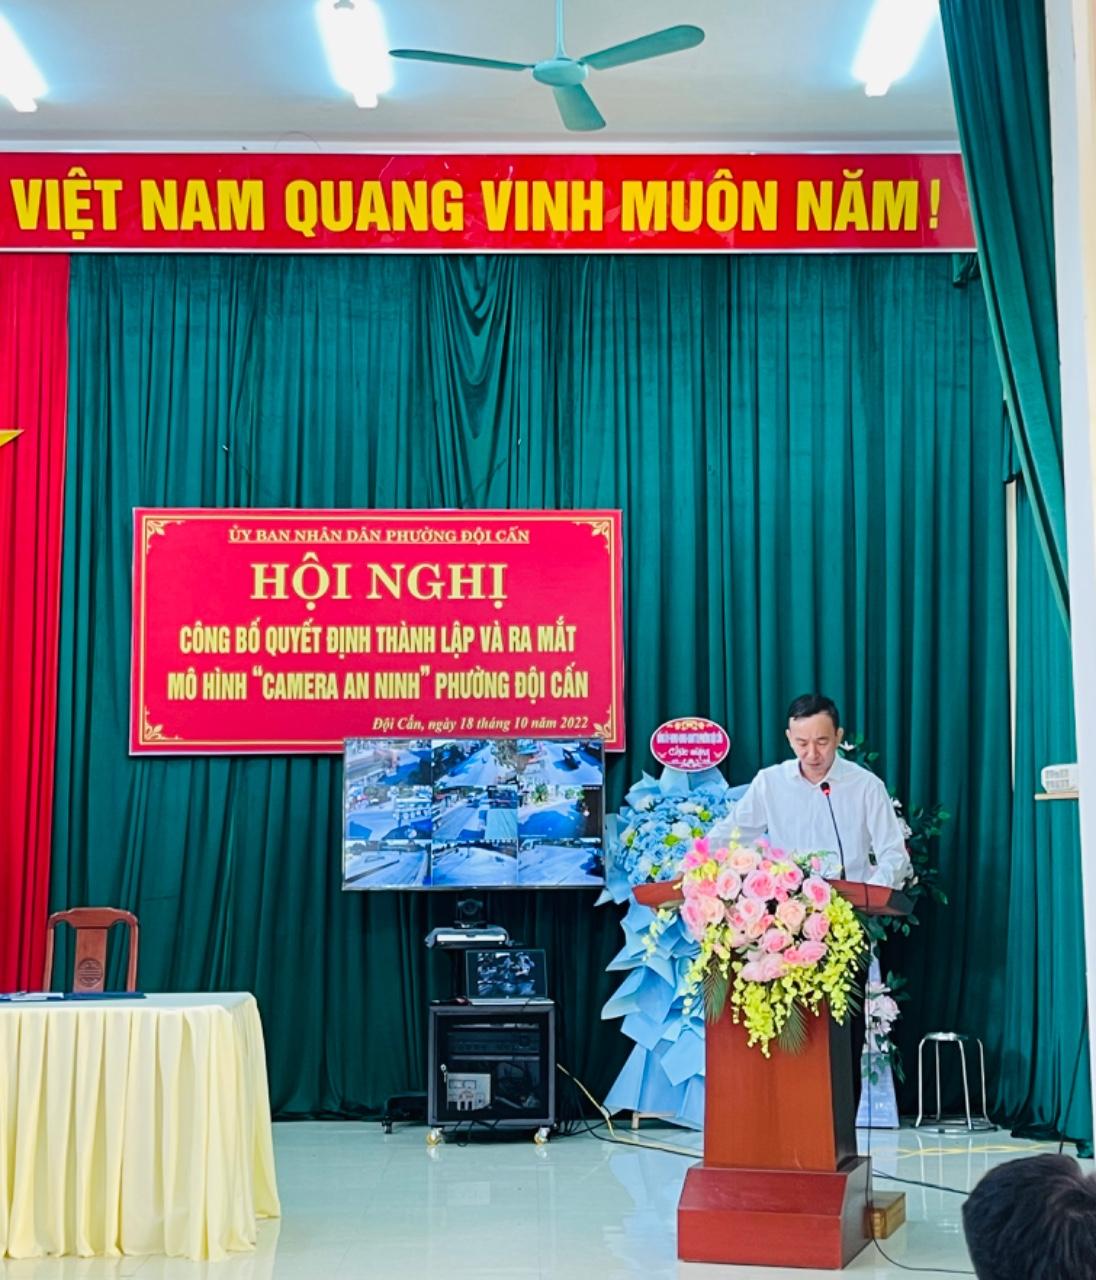 Đồng chí Quách Nam Sơn - Phó bí thư Đảng uỷ, chủ tịch UBND phường khai mạc hội nghị.